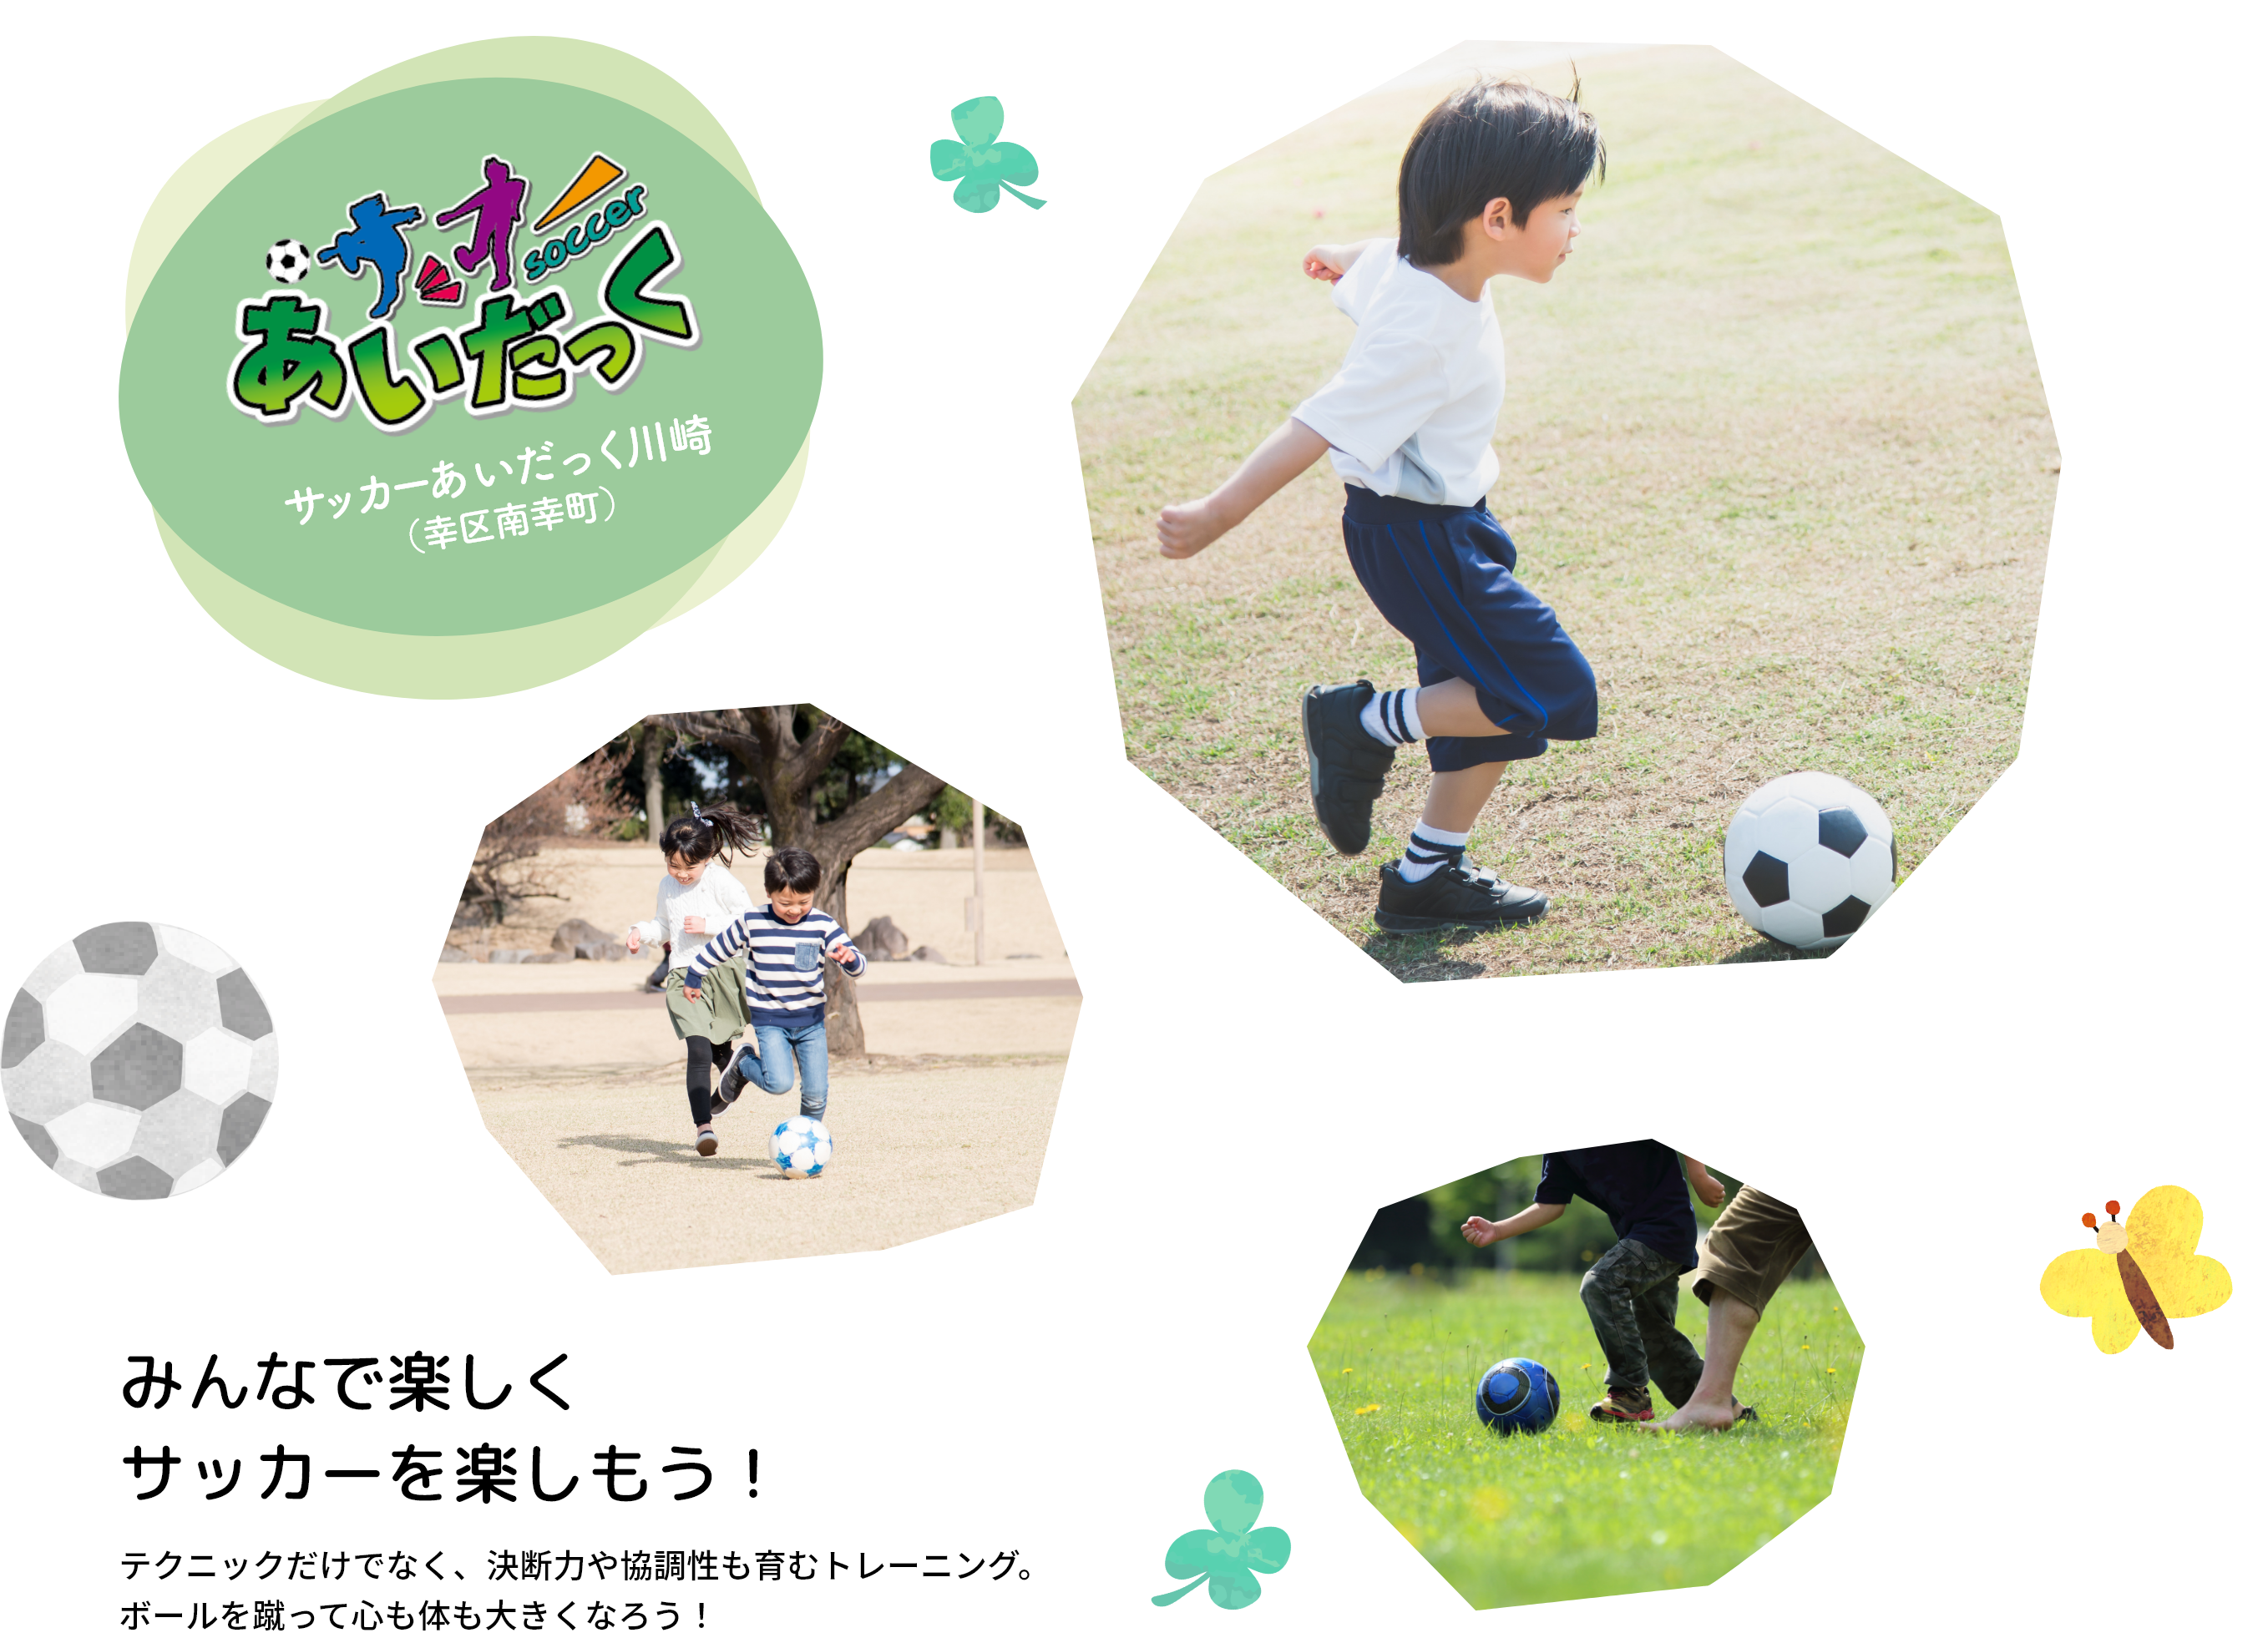 みんなで楽しくサッカーを楽しもう！テクニックだけでなく、決断力や協調性も育むトレーニング。ボールを蹴って心も体も大きくなろう！